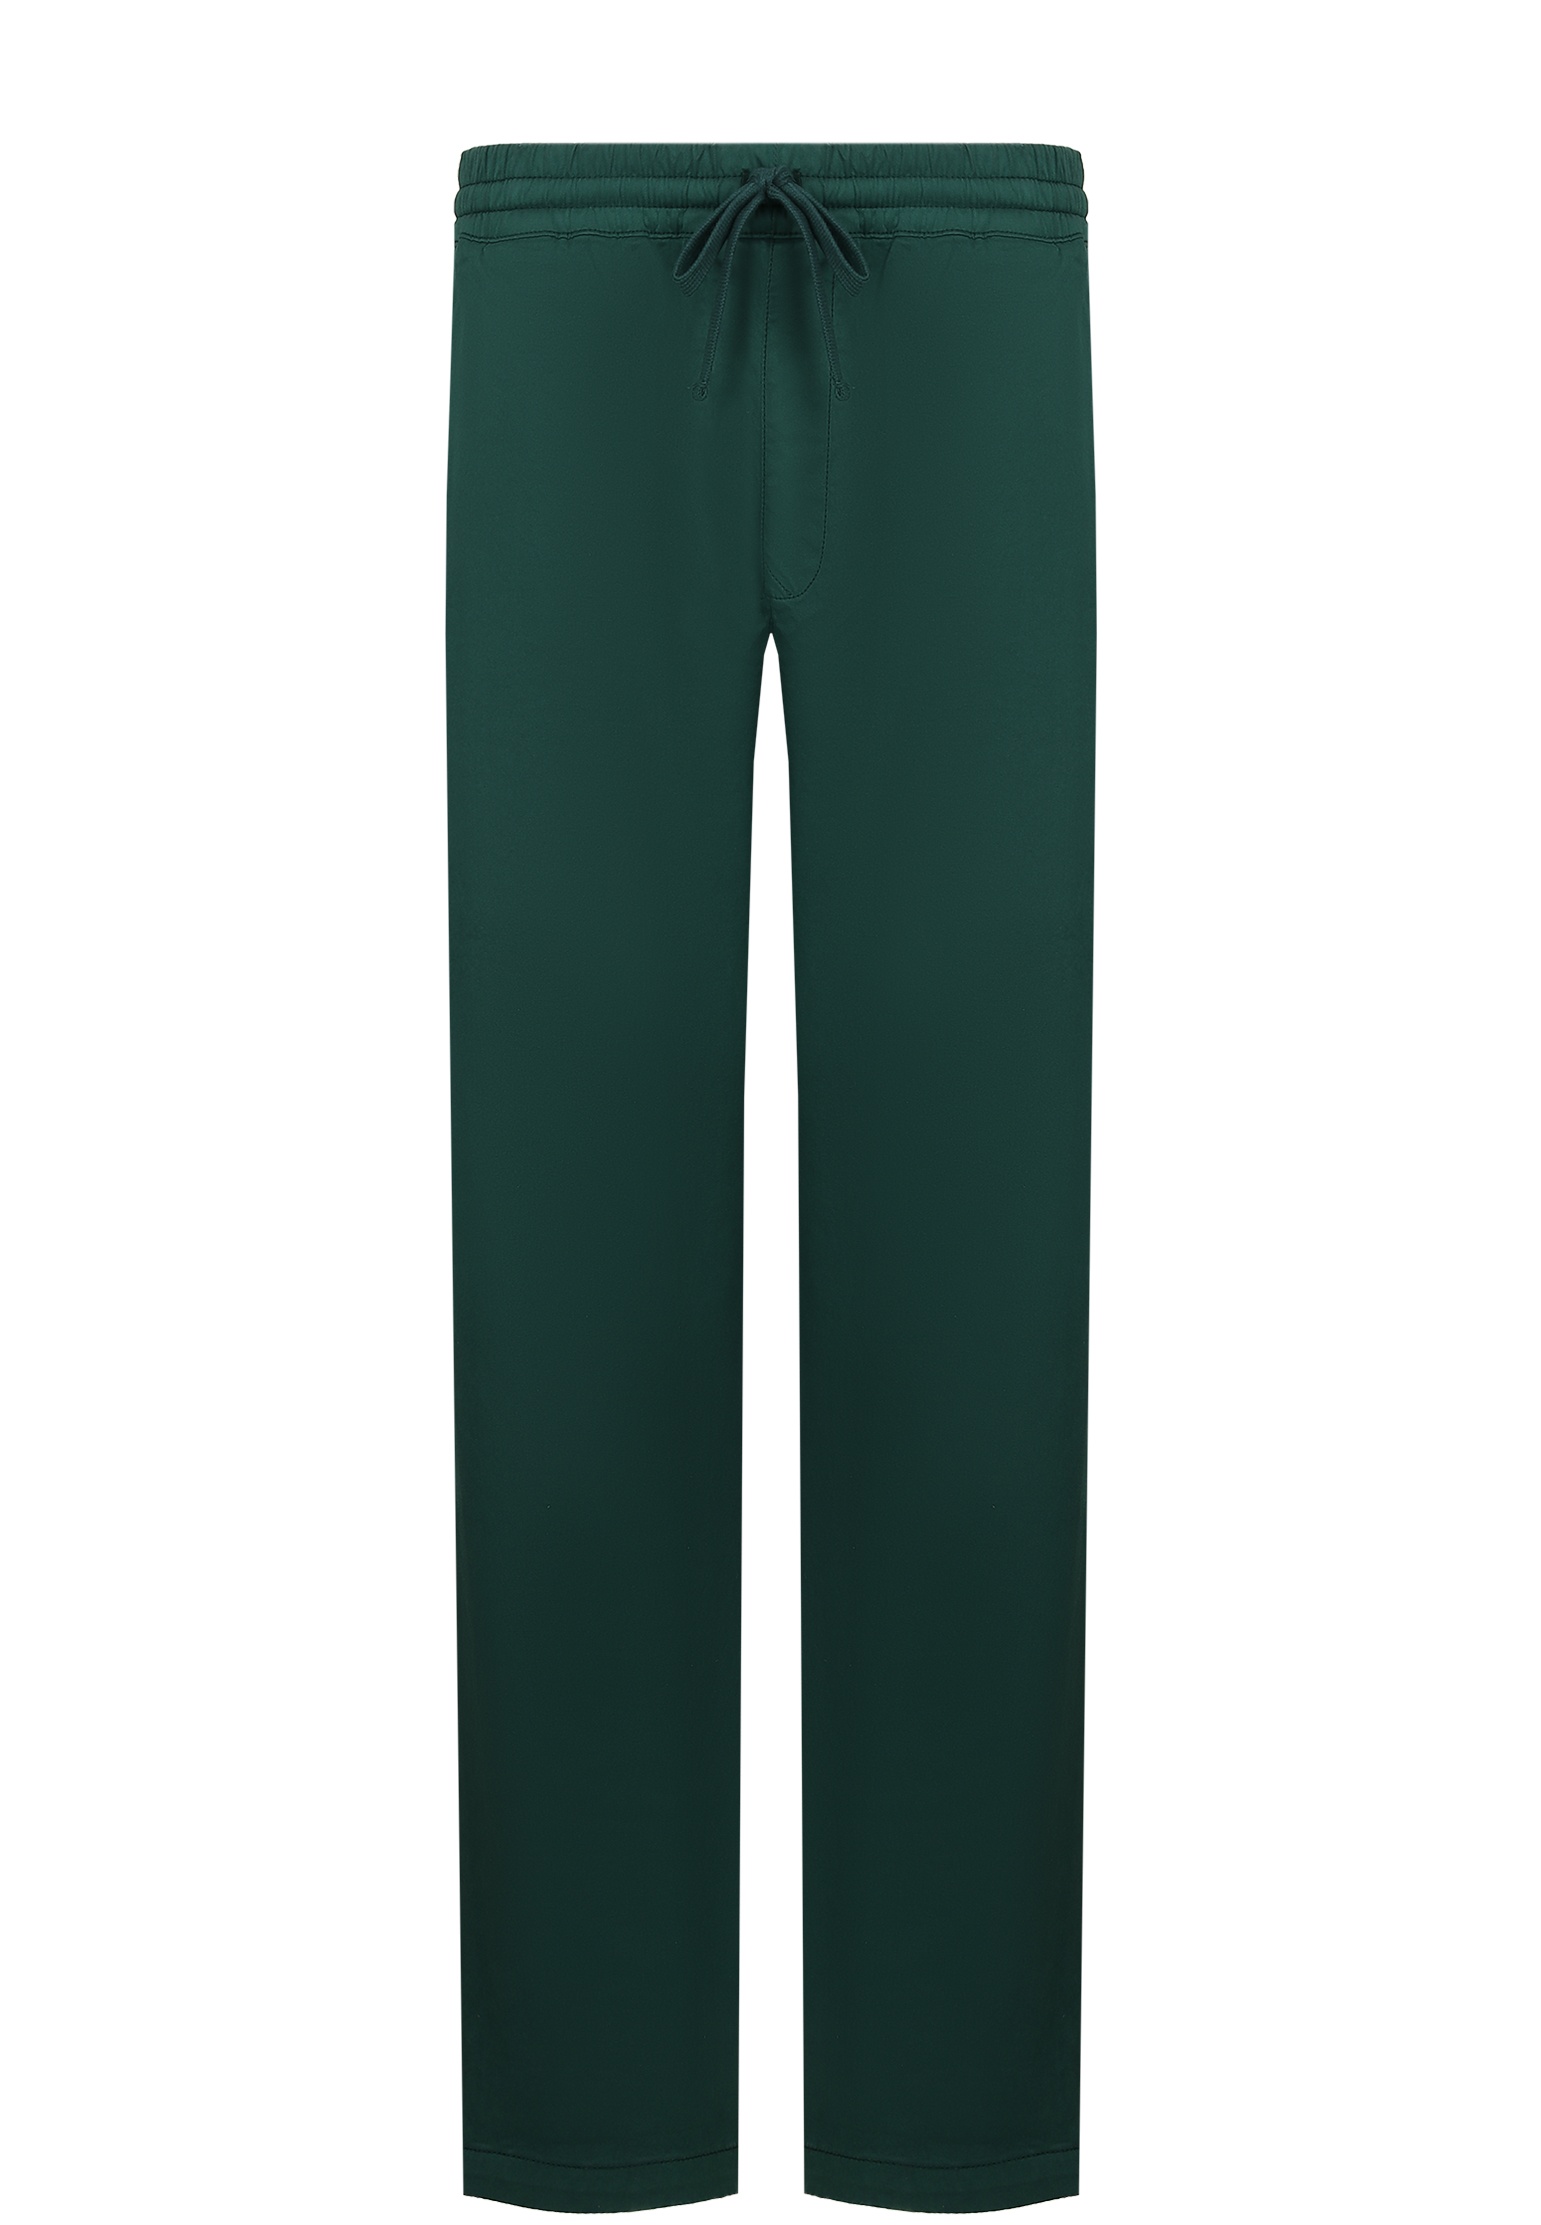 мужские брюки carhartt wip, зеленые